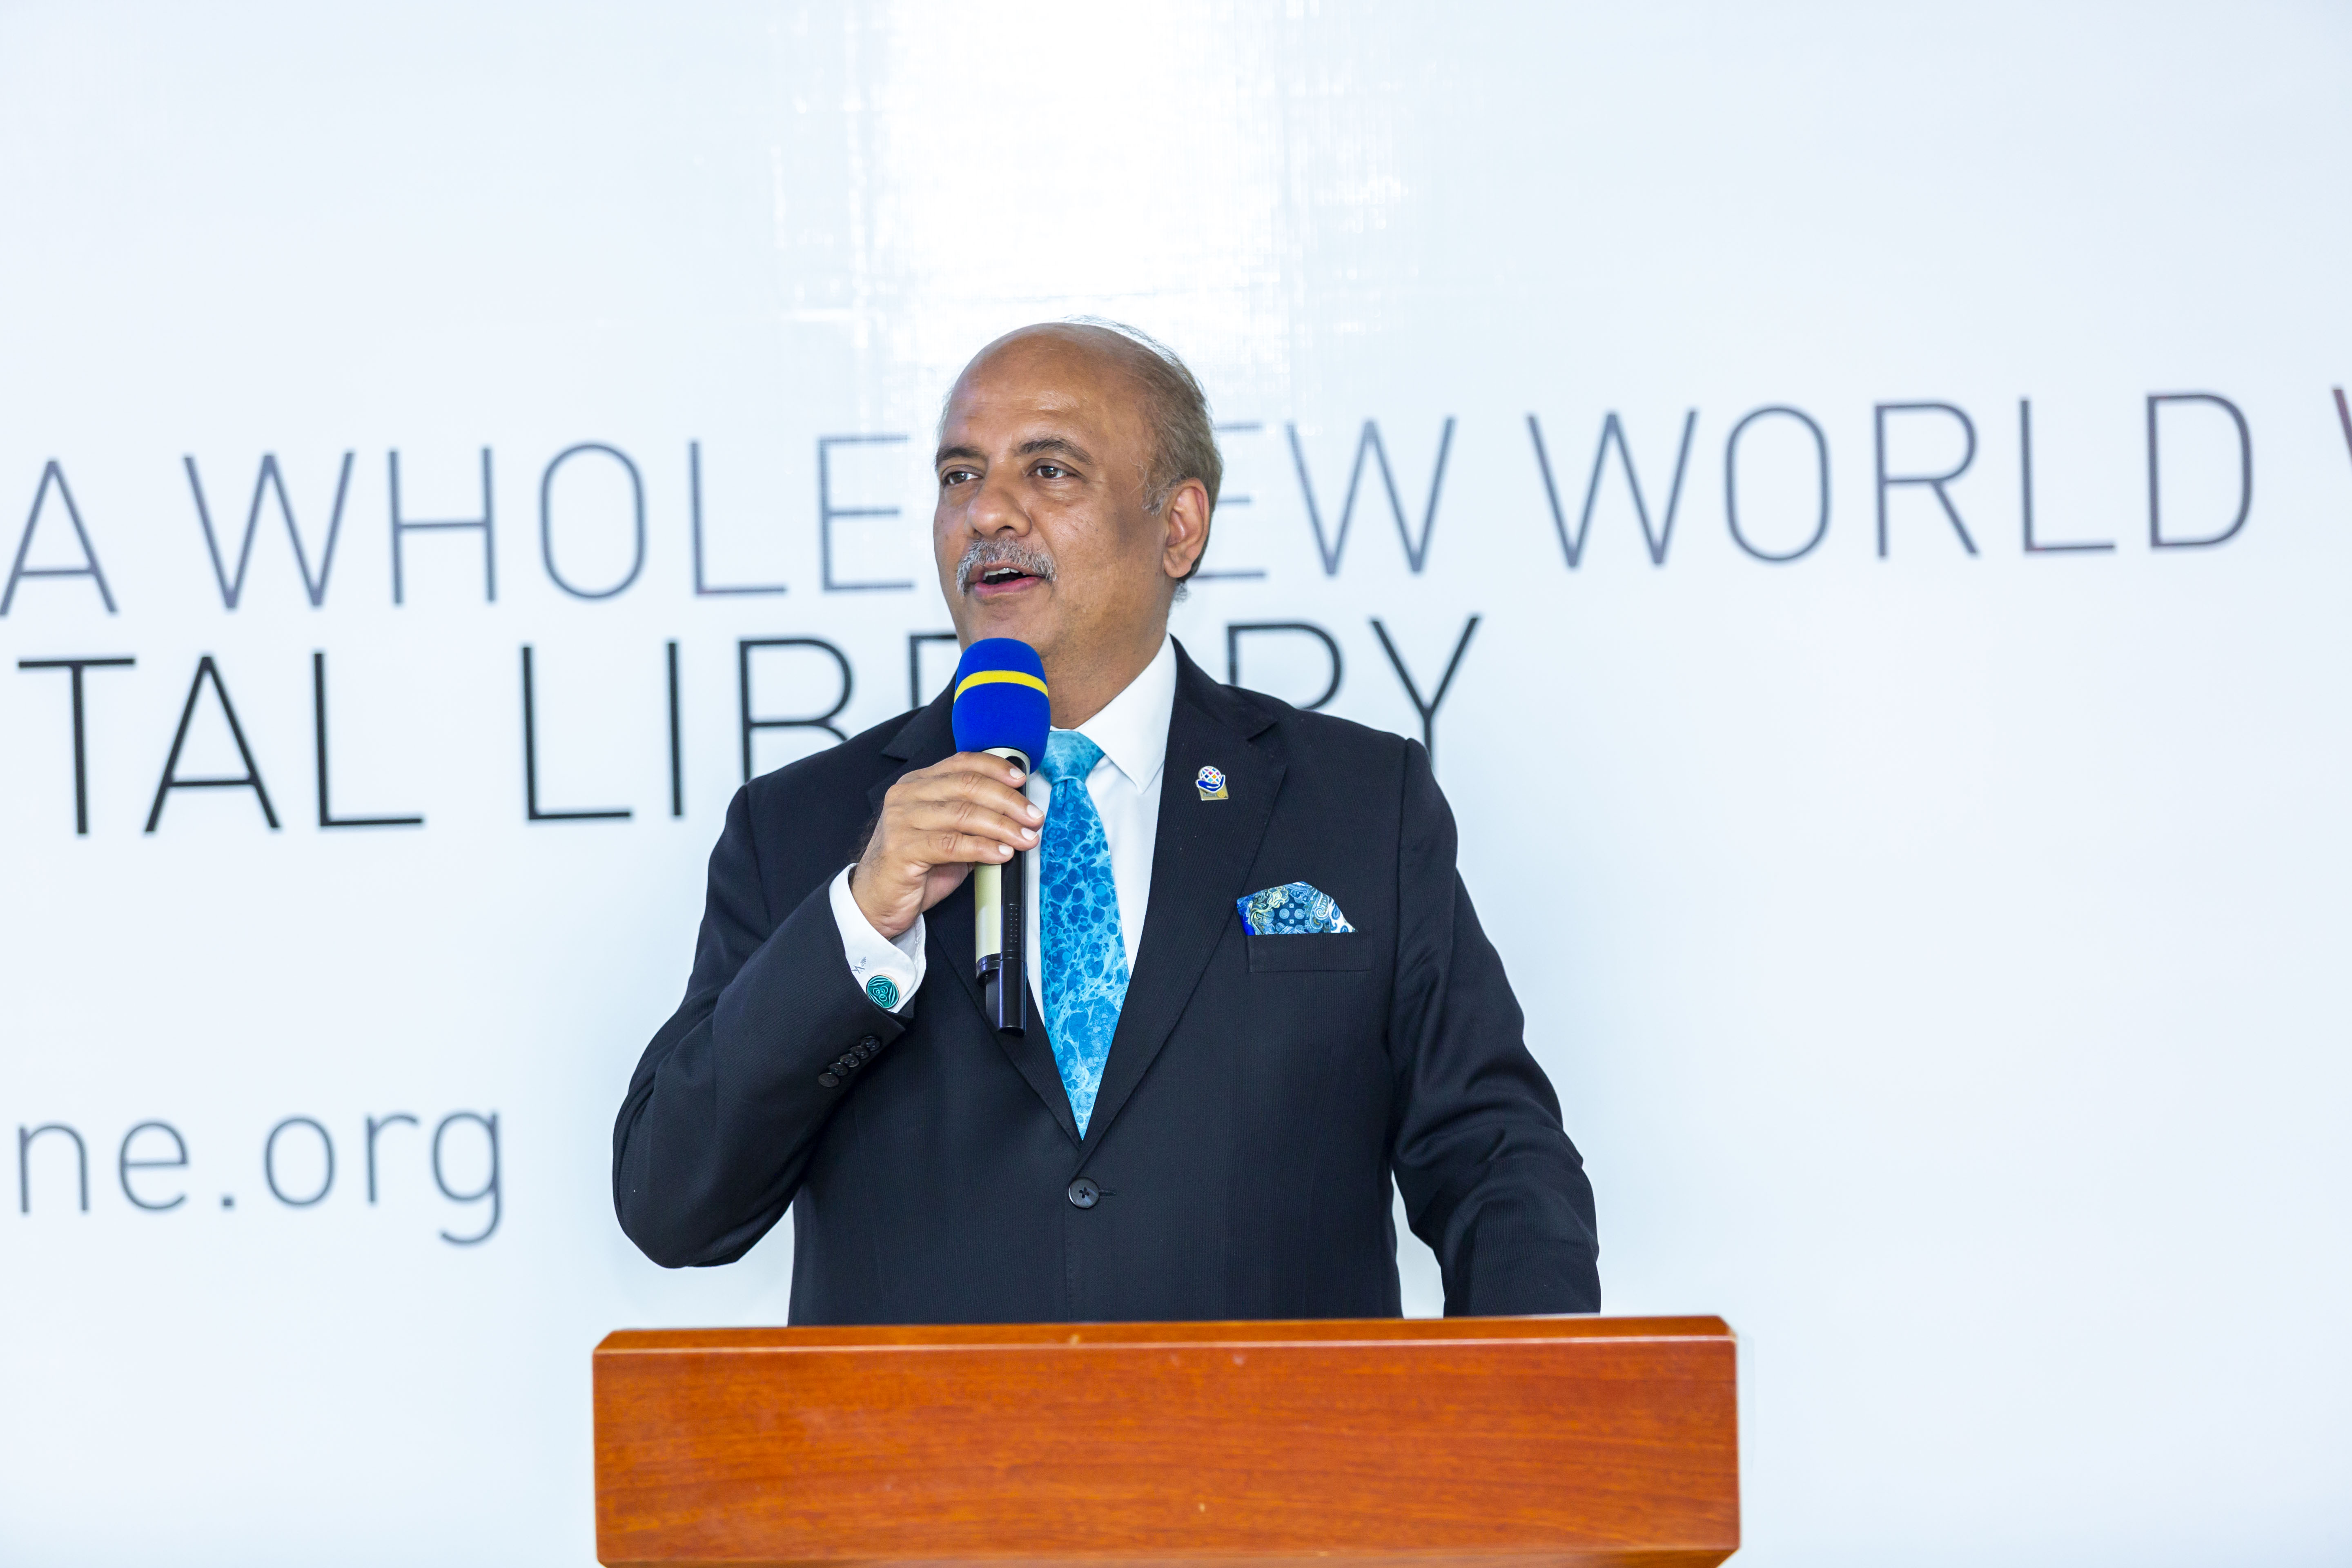 Shekhar Mehta, the 2021-22 Rotary International President speaking during the event